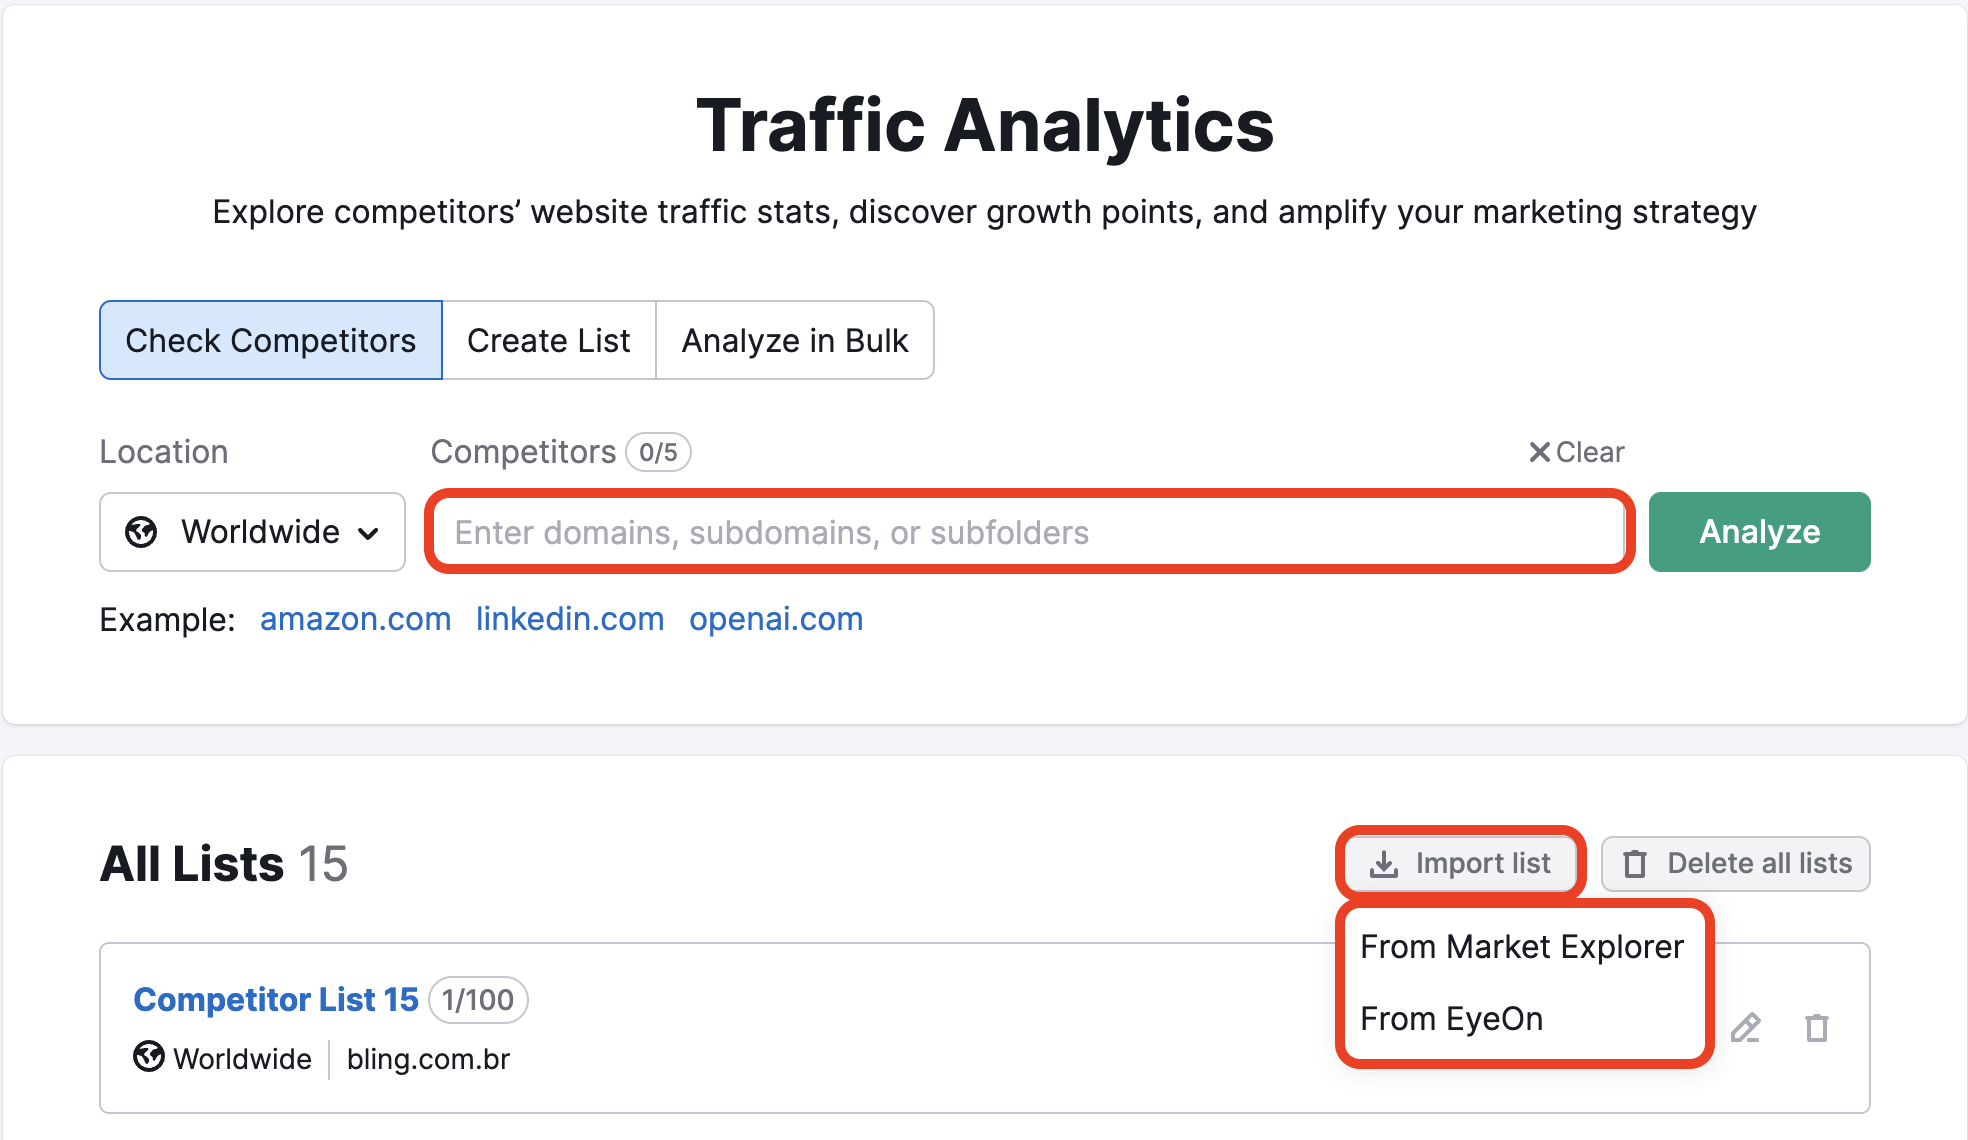 "Traffic Analytics" landing page